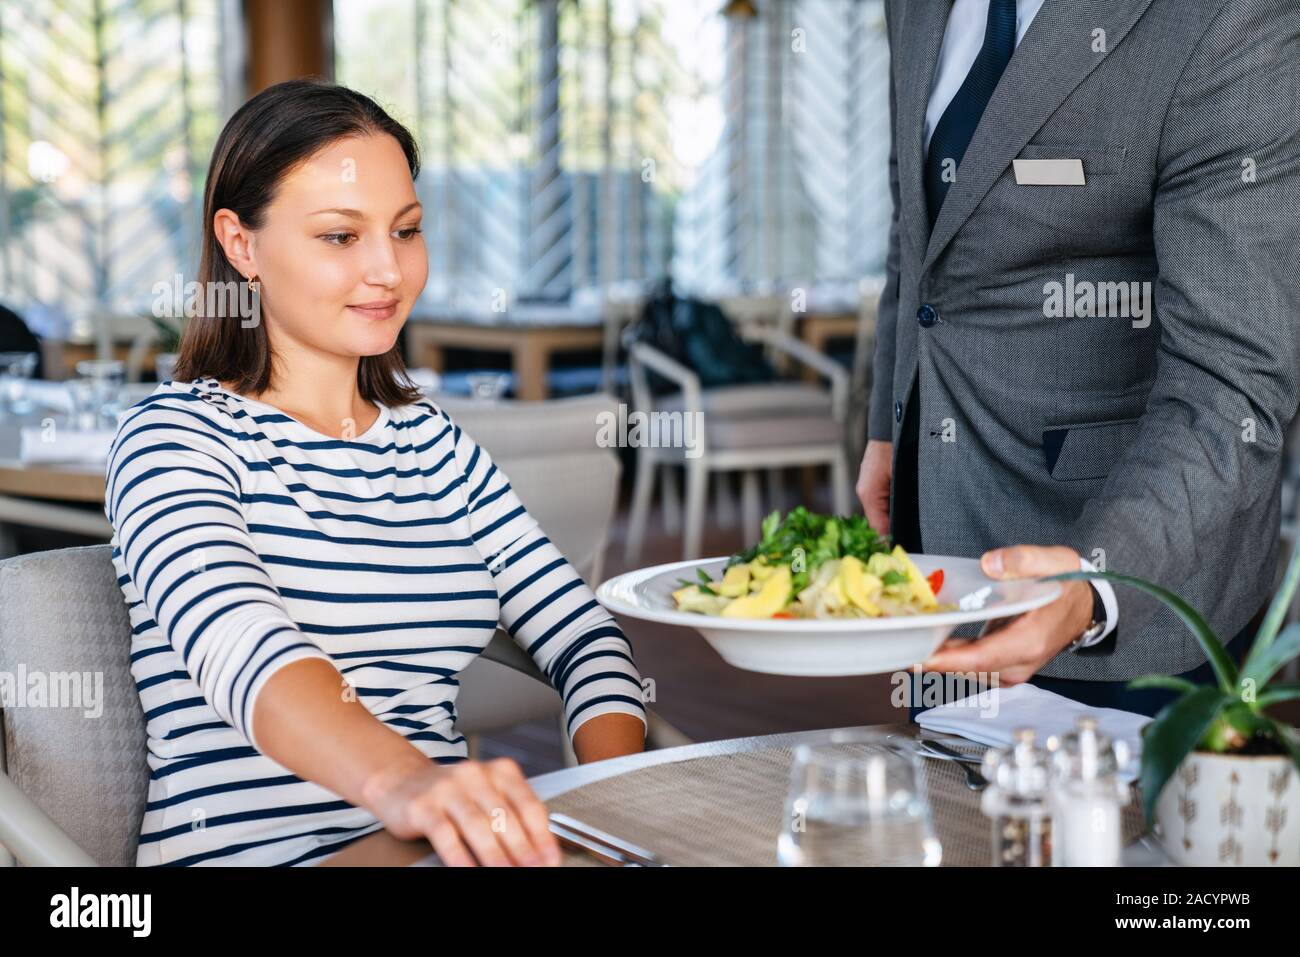 Junge Frau von Kellner für ein Mittagessen in einem elagance Restaurant serviert. Stockfoto